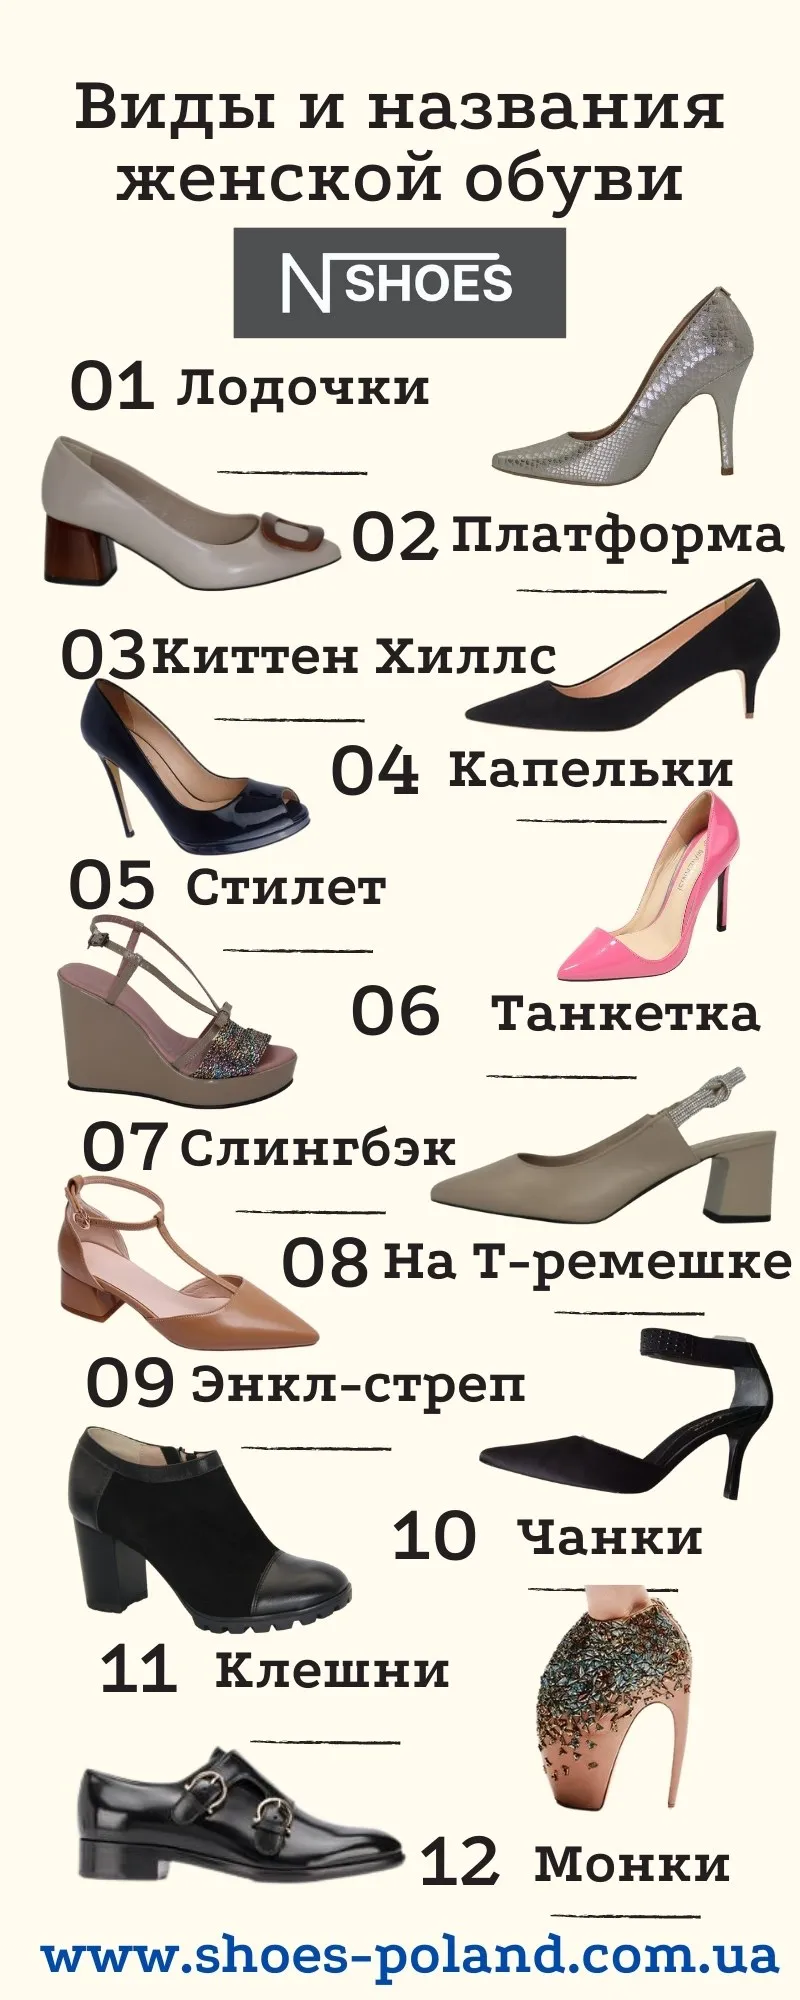 Название летней женской обуви